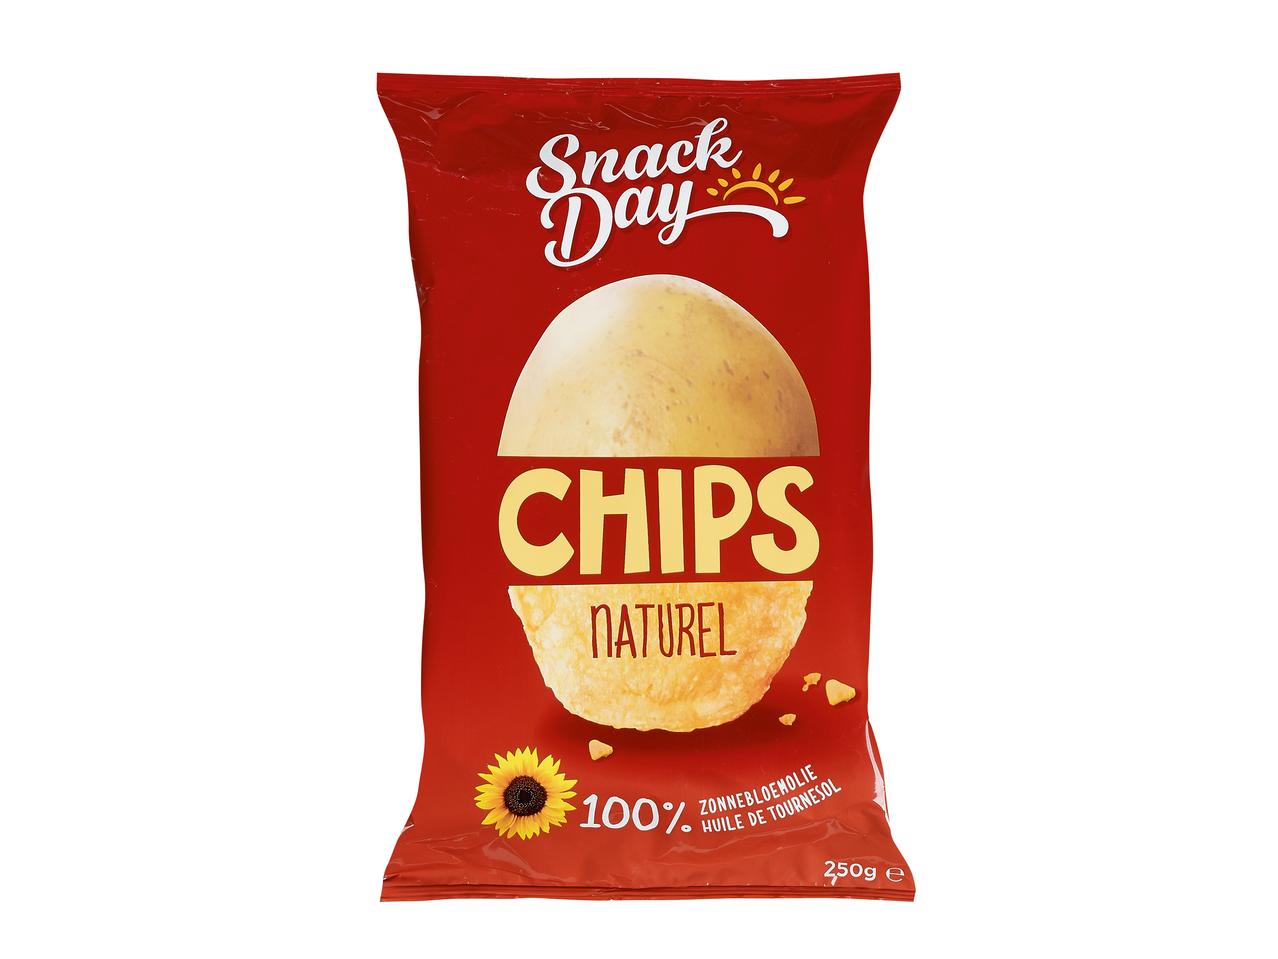 Chips Paprikageschmack oder Natur